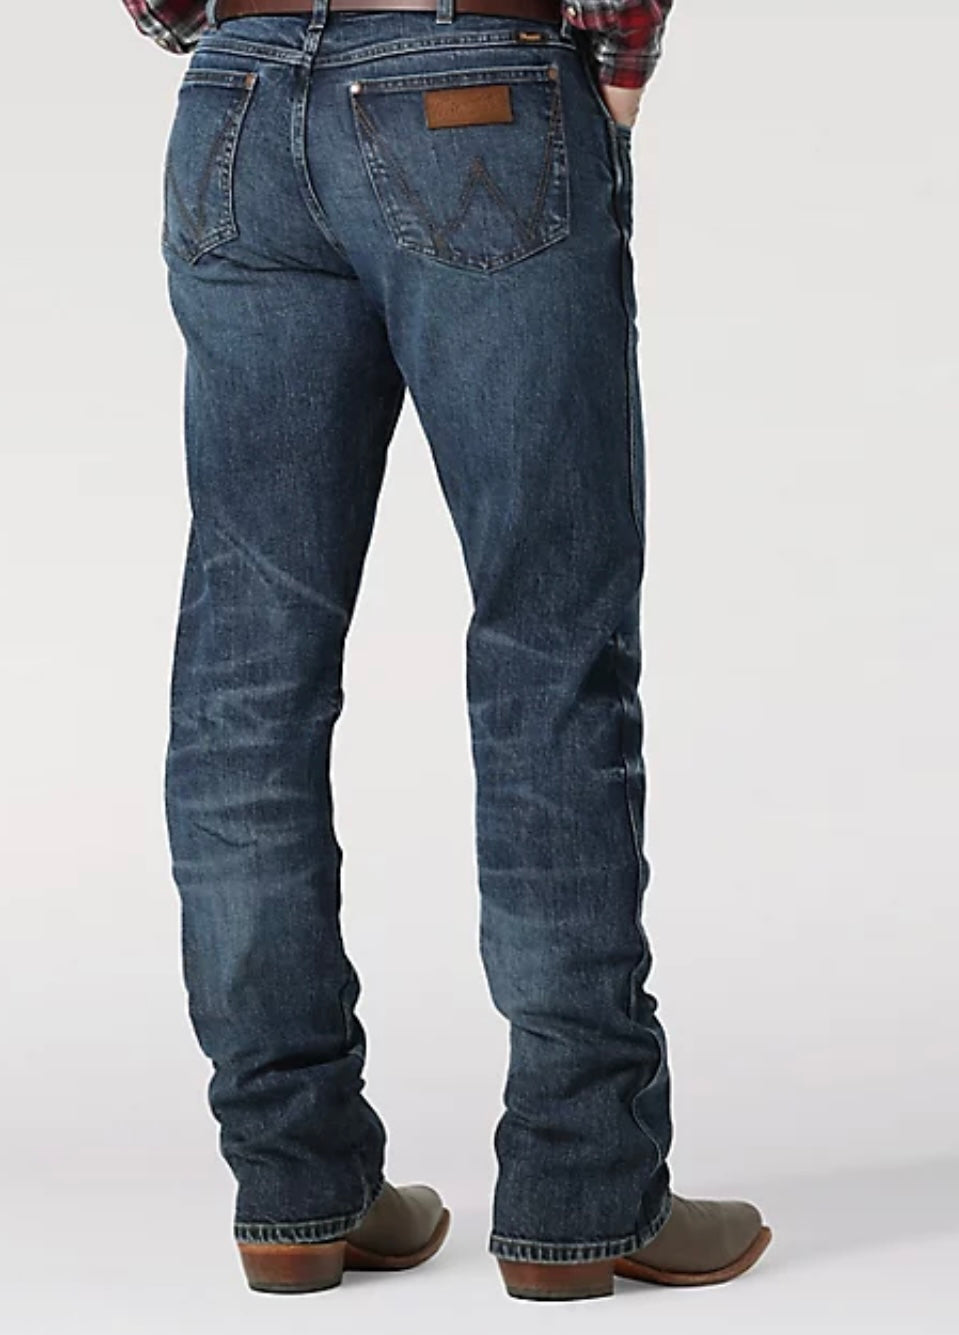 Wrangler Men's Retro Slim Boot Jean